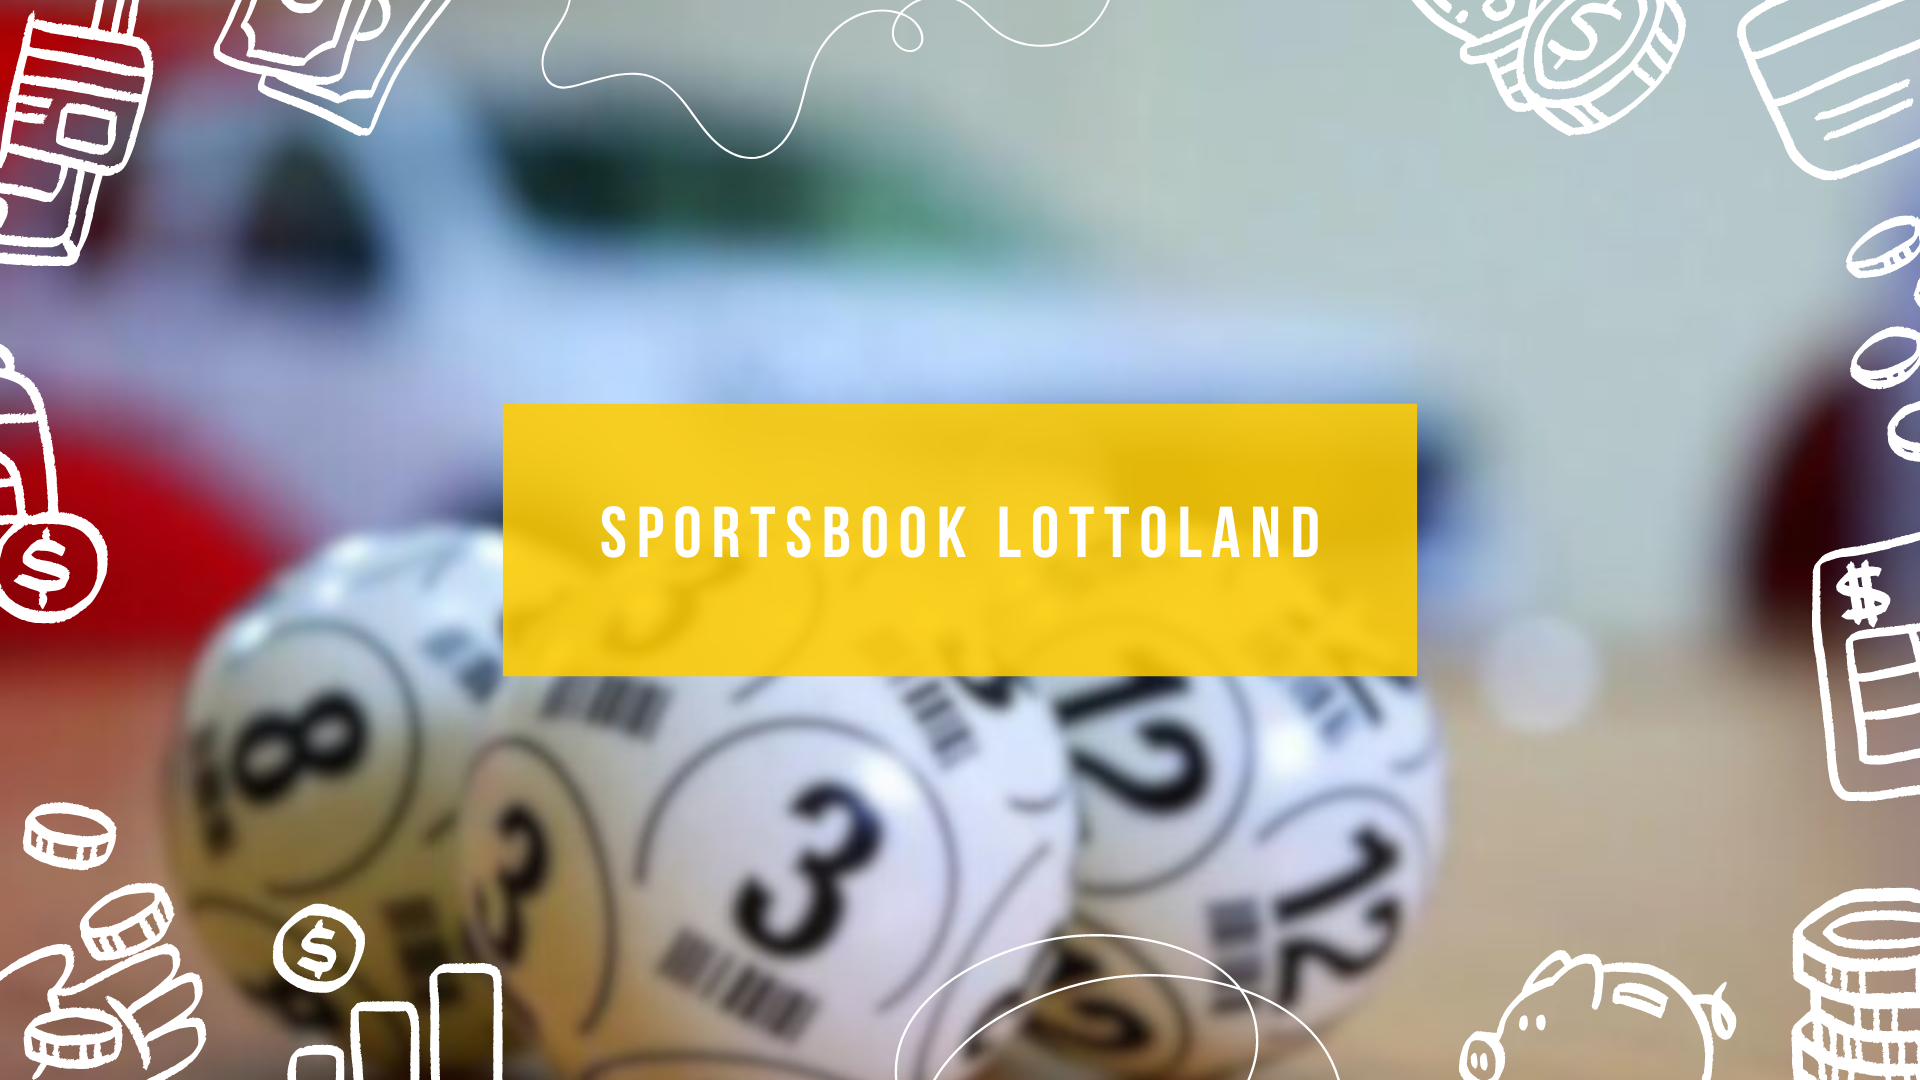 Sportsbook Lottoland